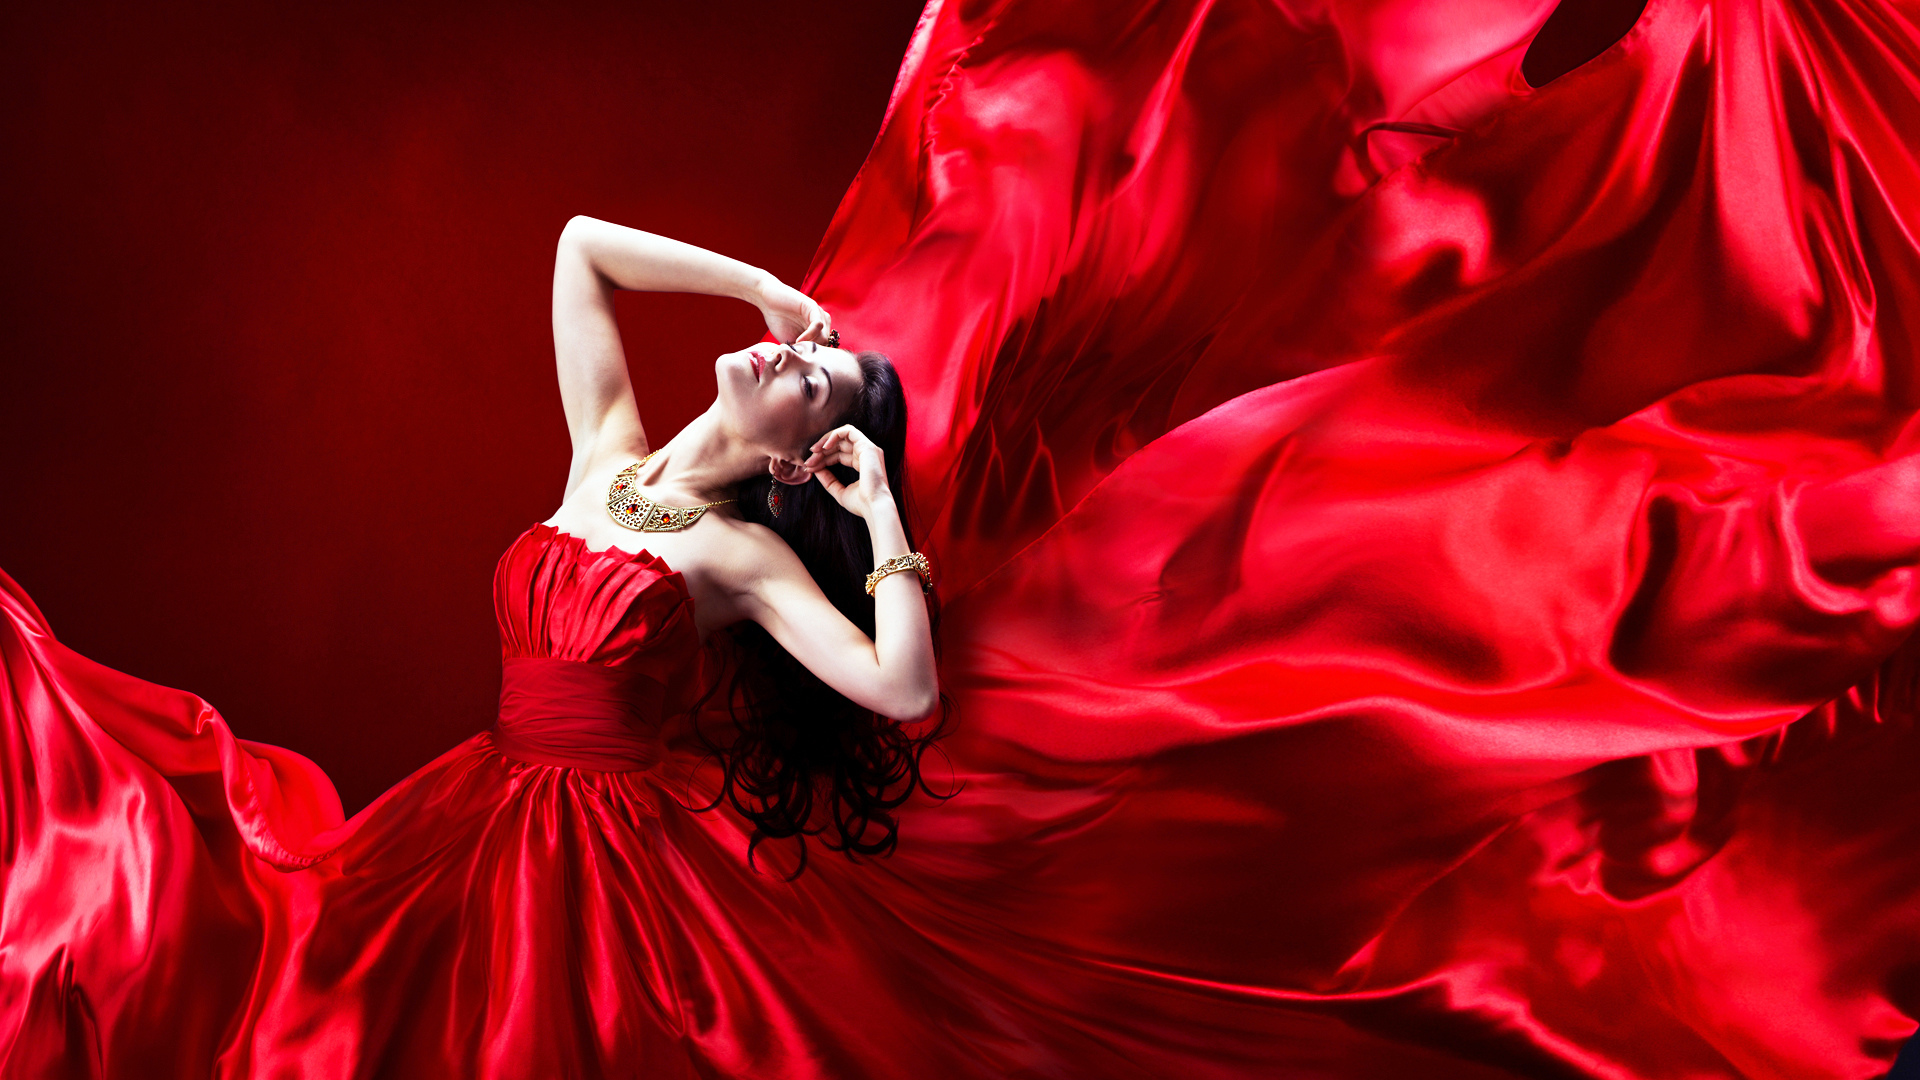 Красивая Картинка Платье Красная Девушка